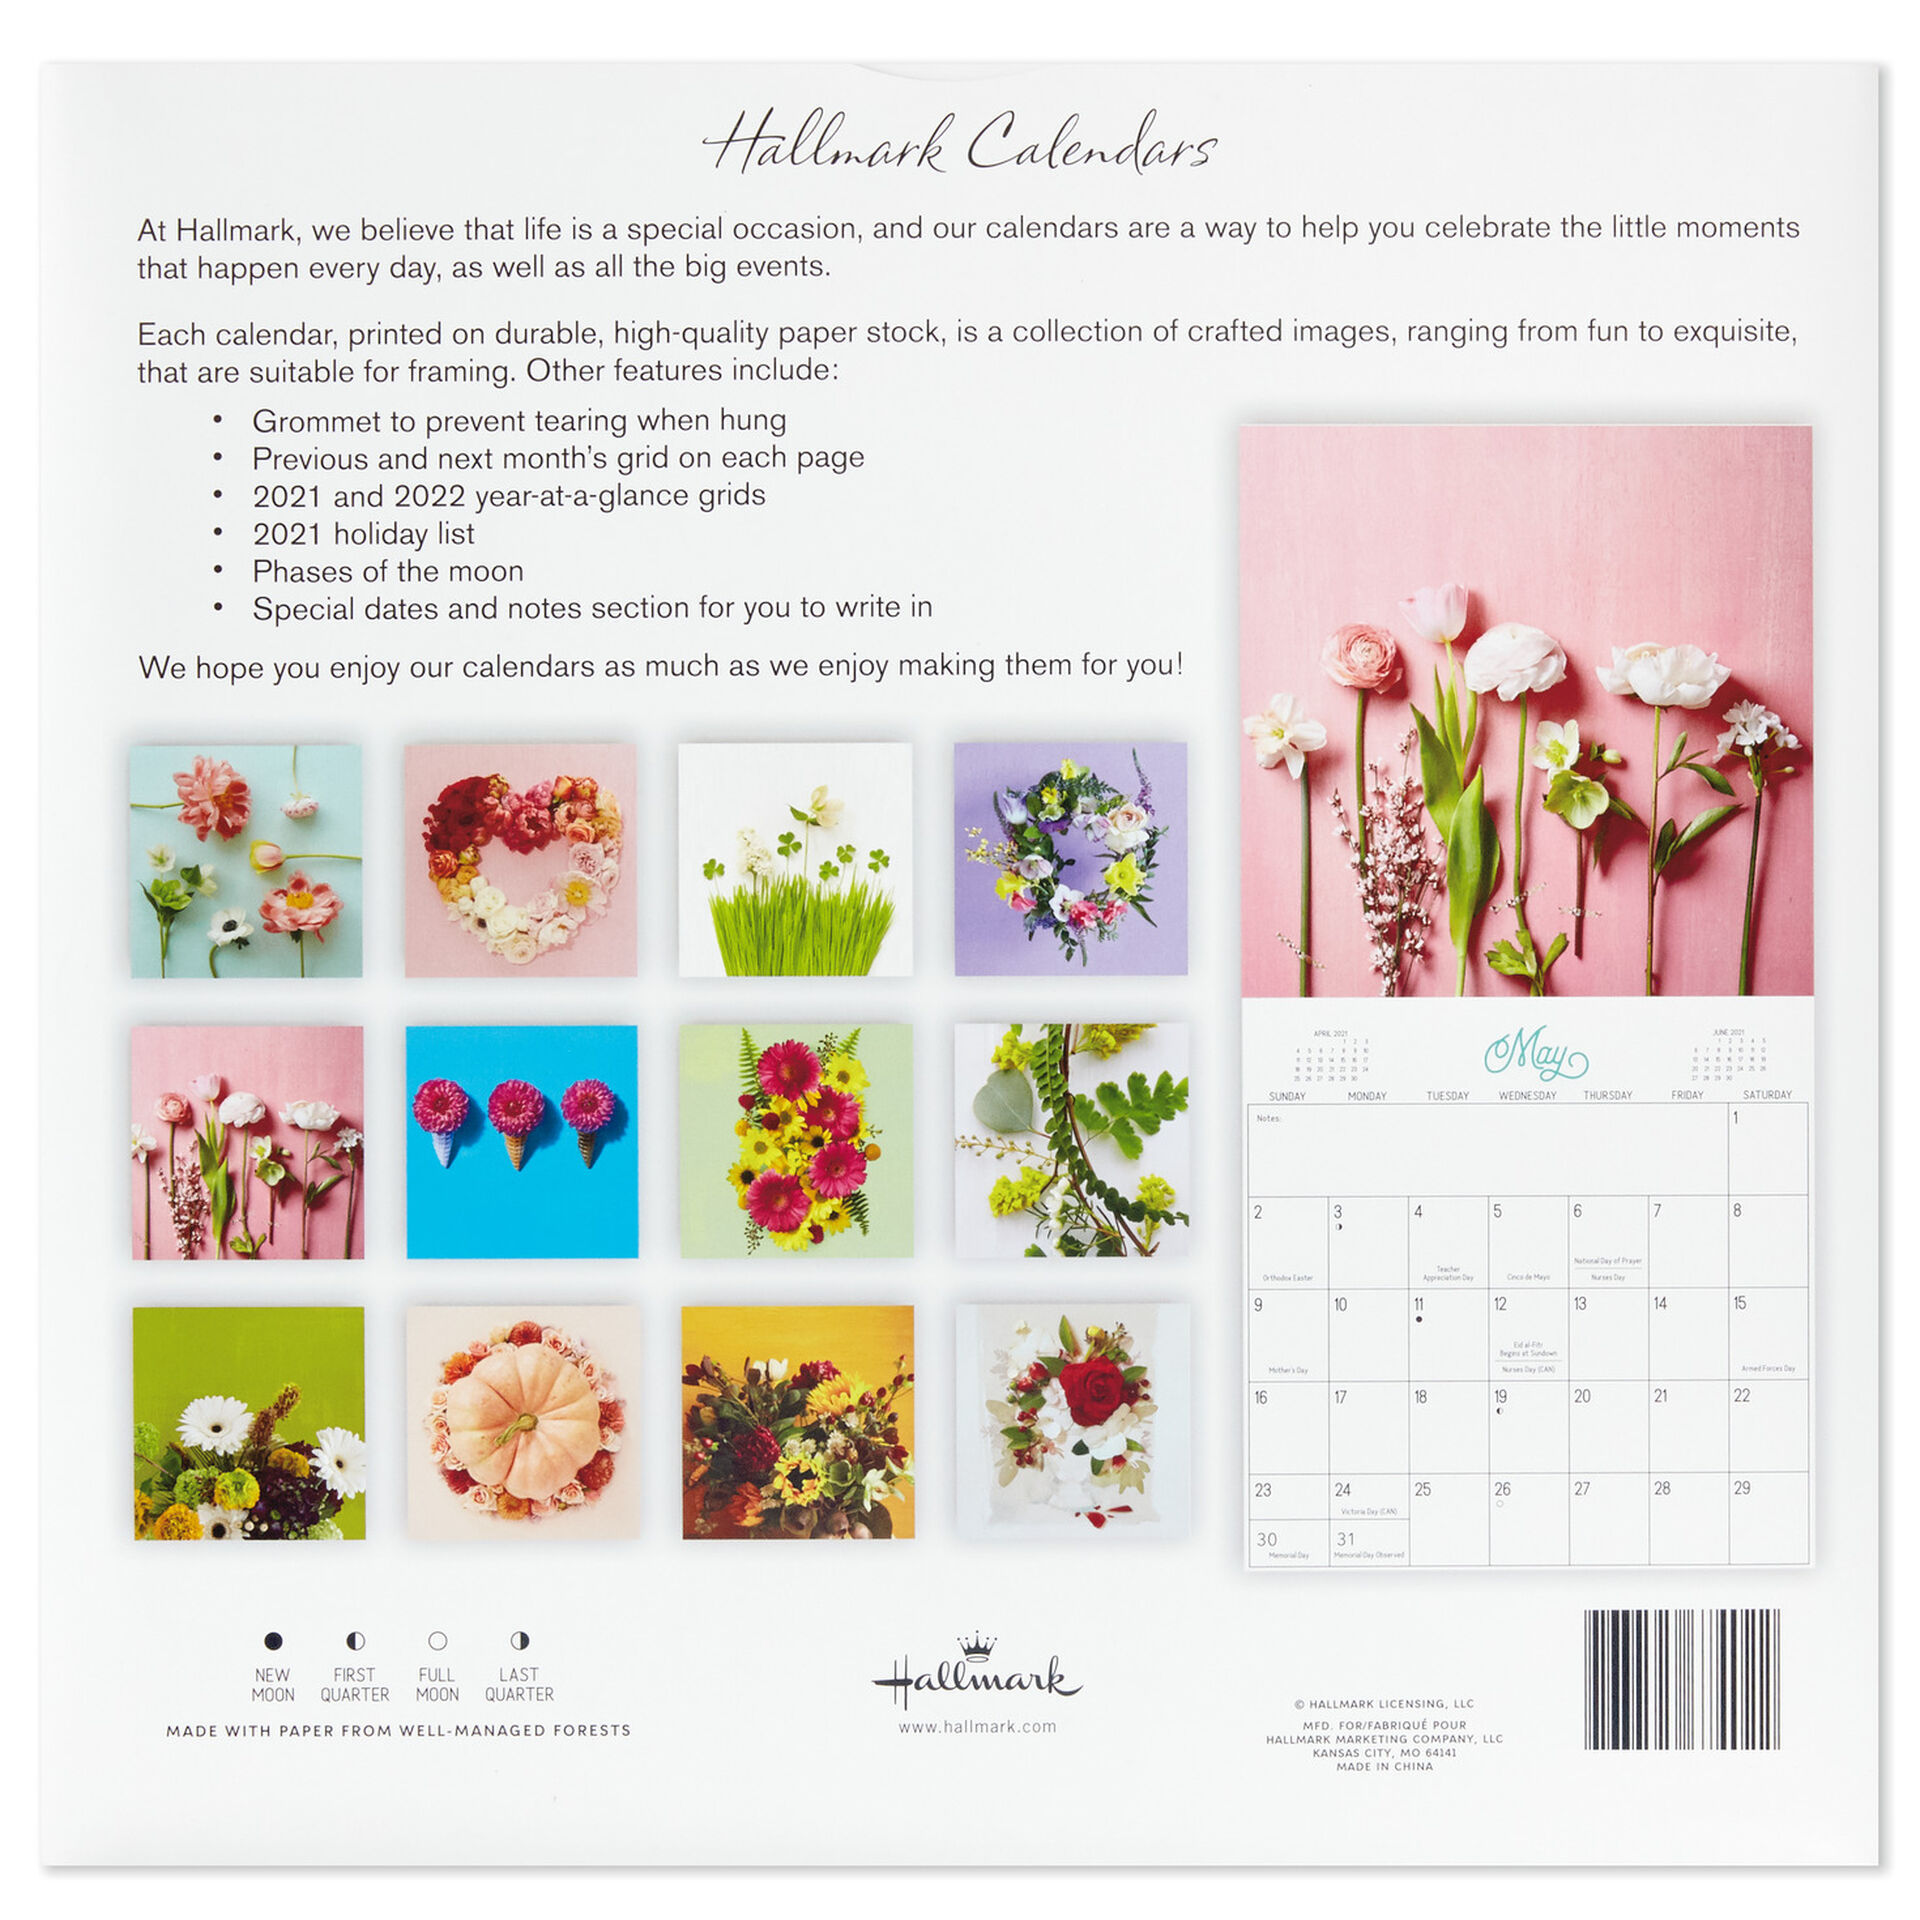 hallmark calendar 2021 Flowers 2021 Wall Calendar 12 Month Calendars Planners Hallmark hallmark calendar 2021